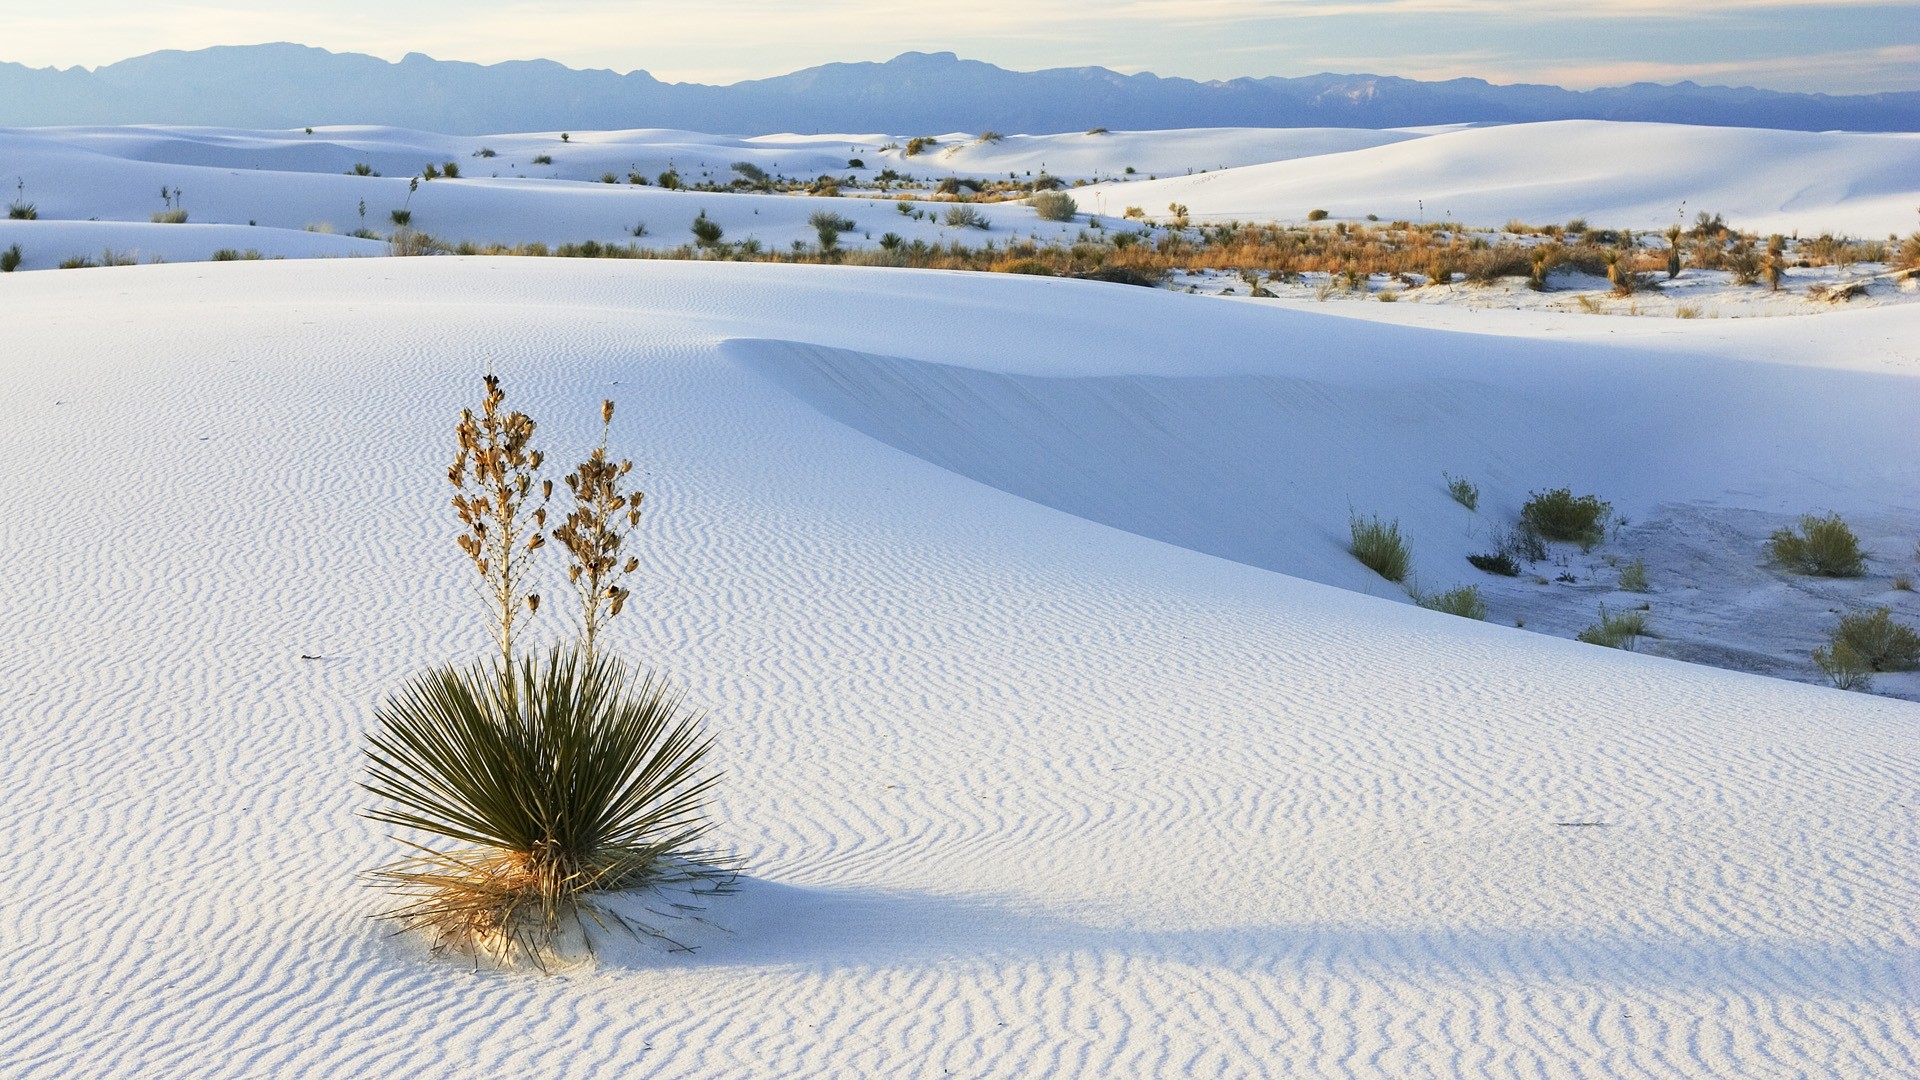 Download mobile wallpaper Desert, Earth for free.